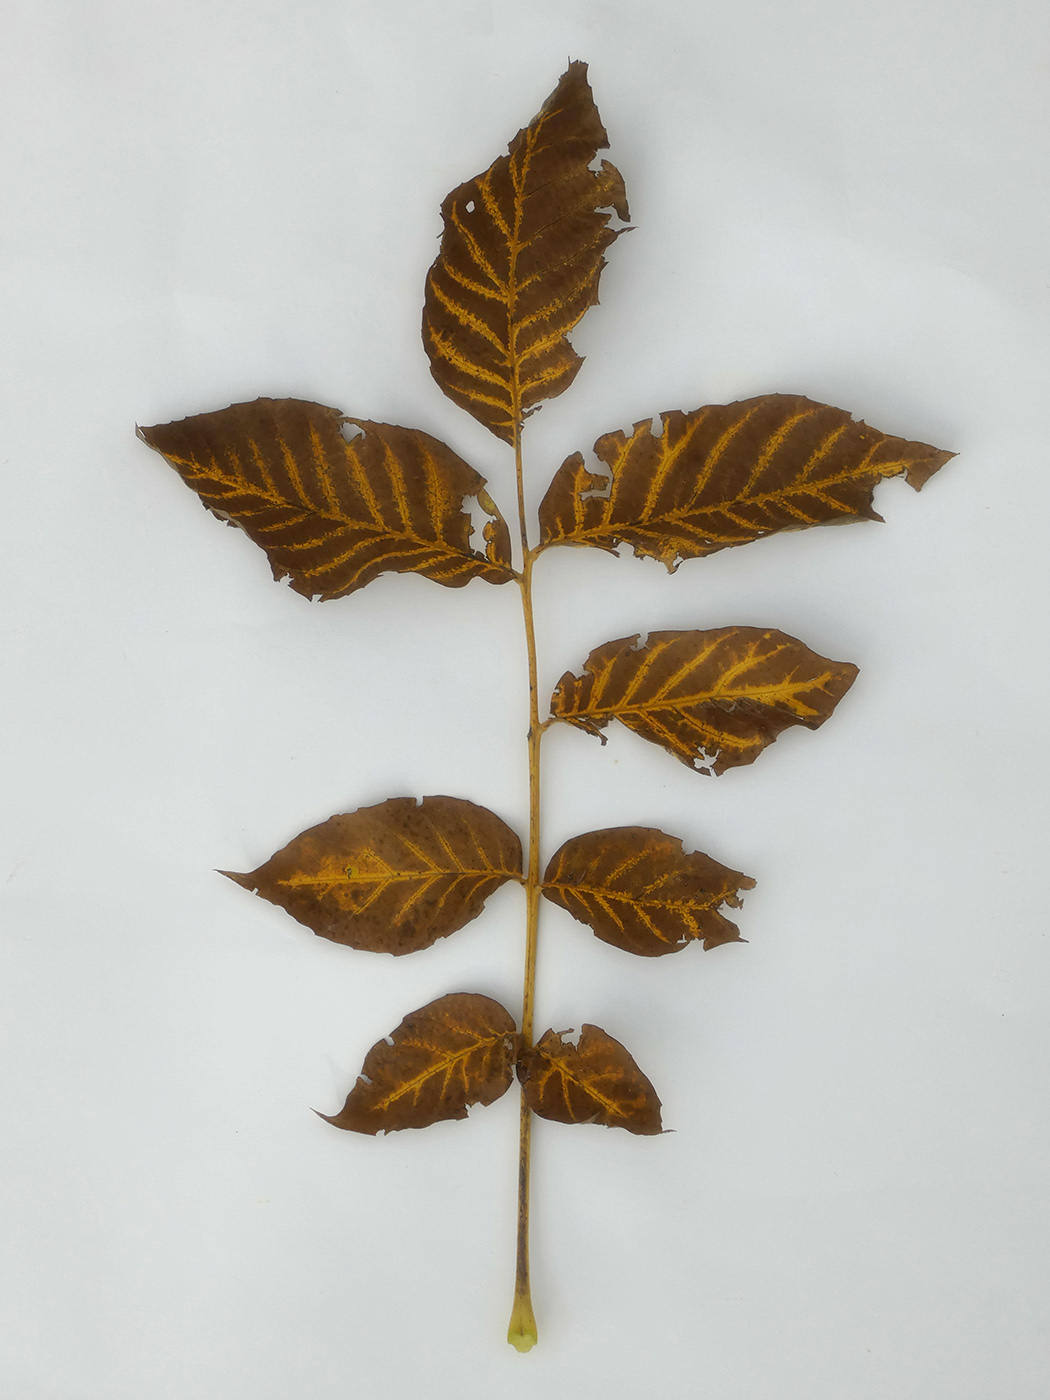 Image of Juglans regia specimen.